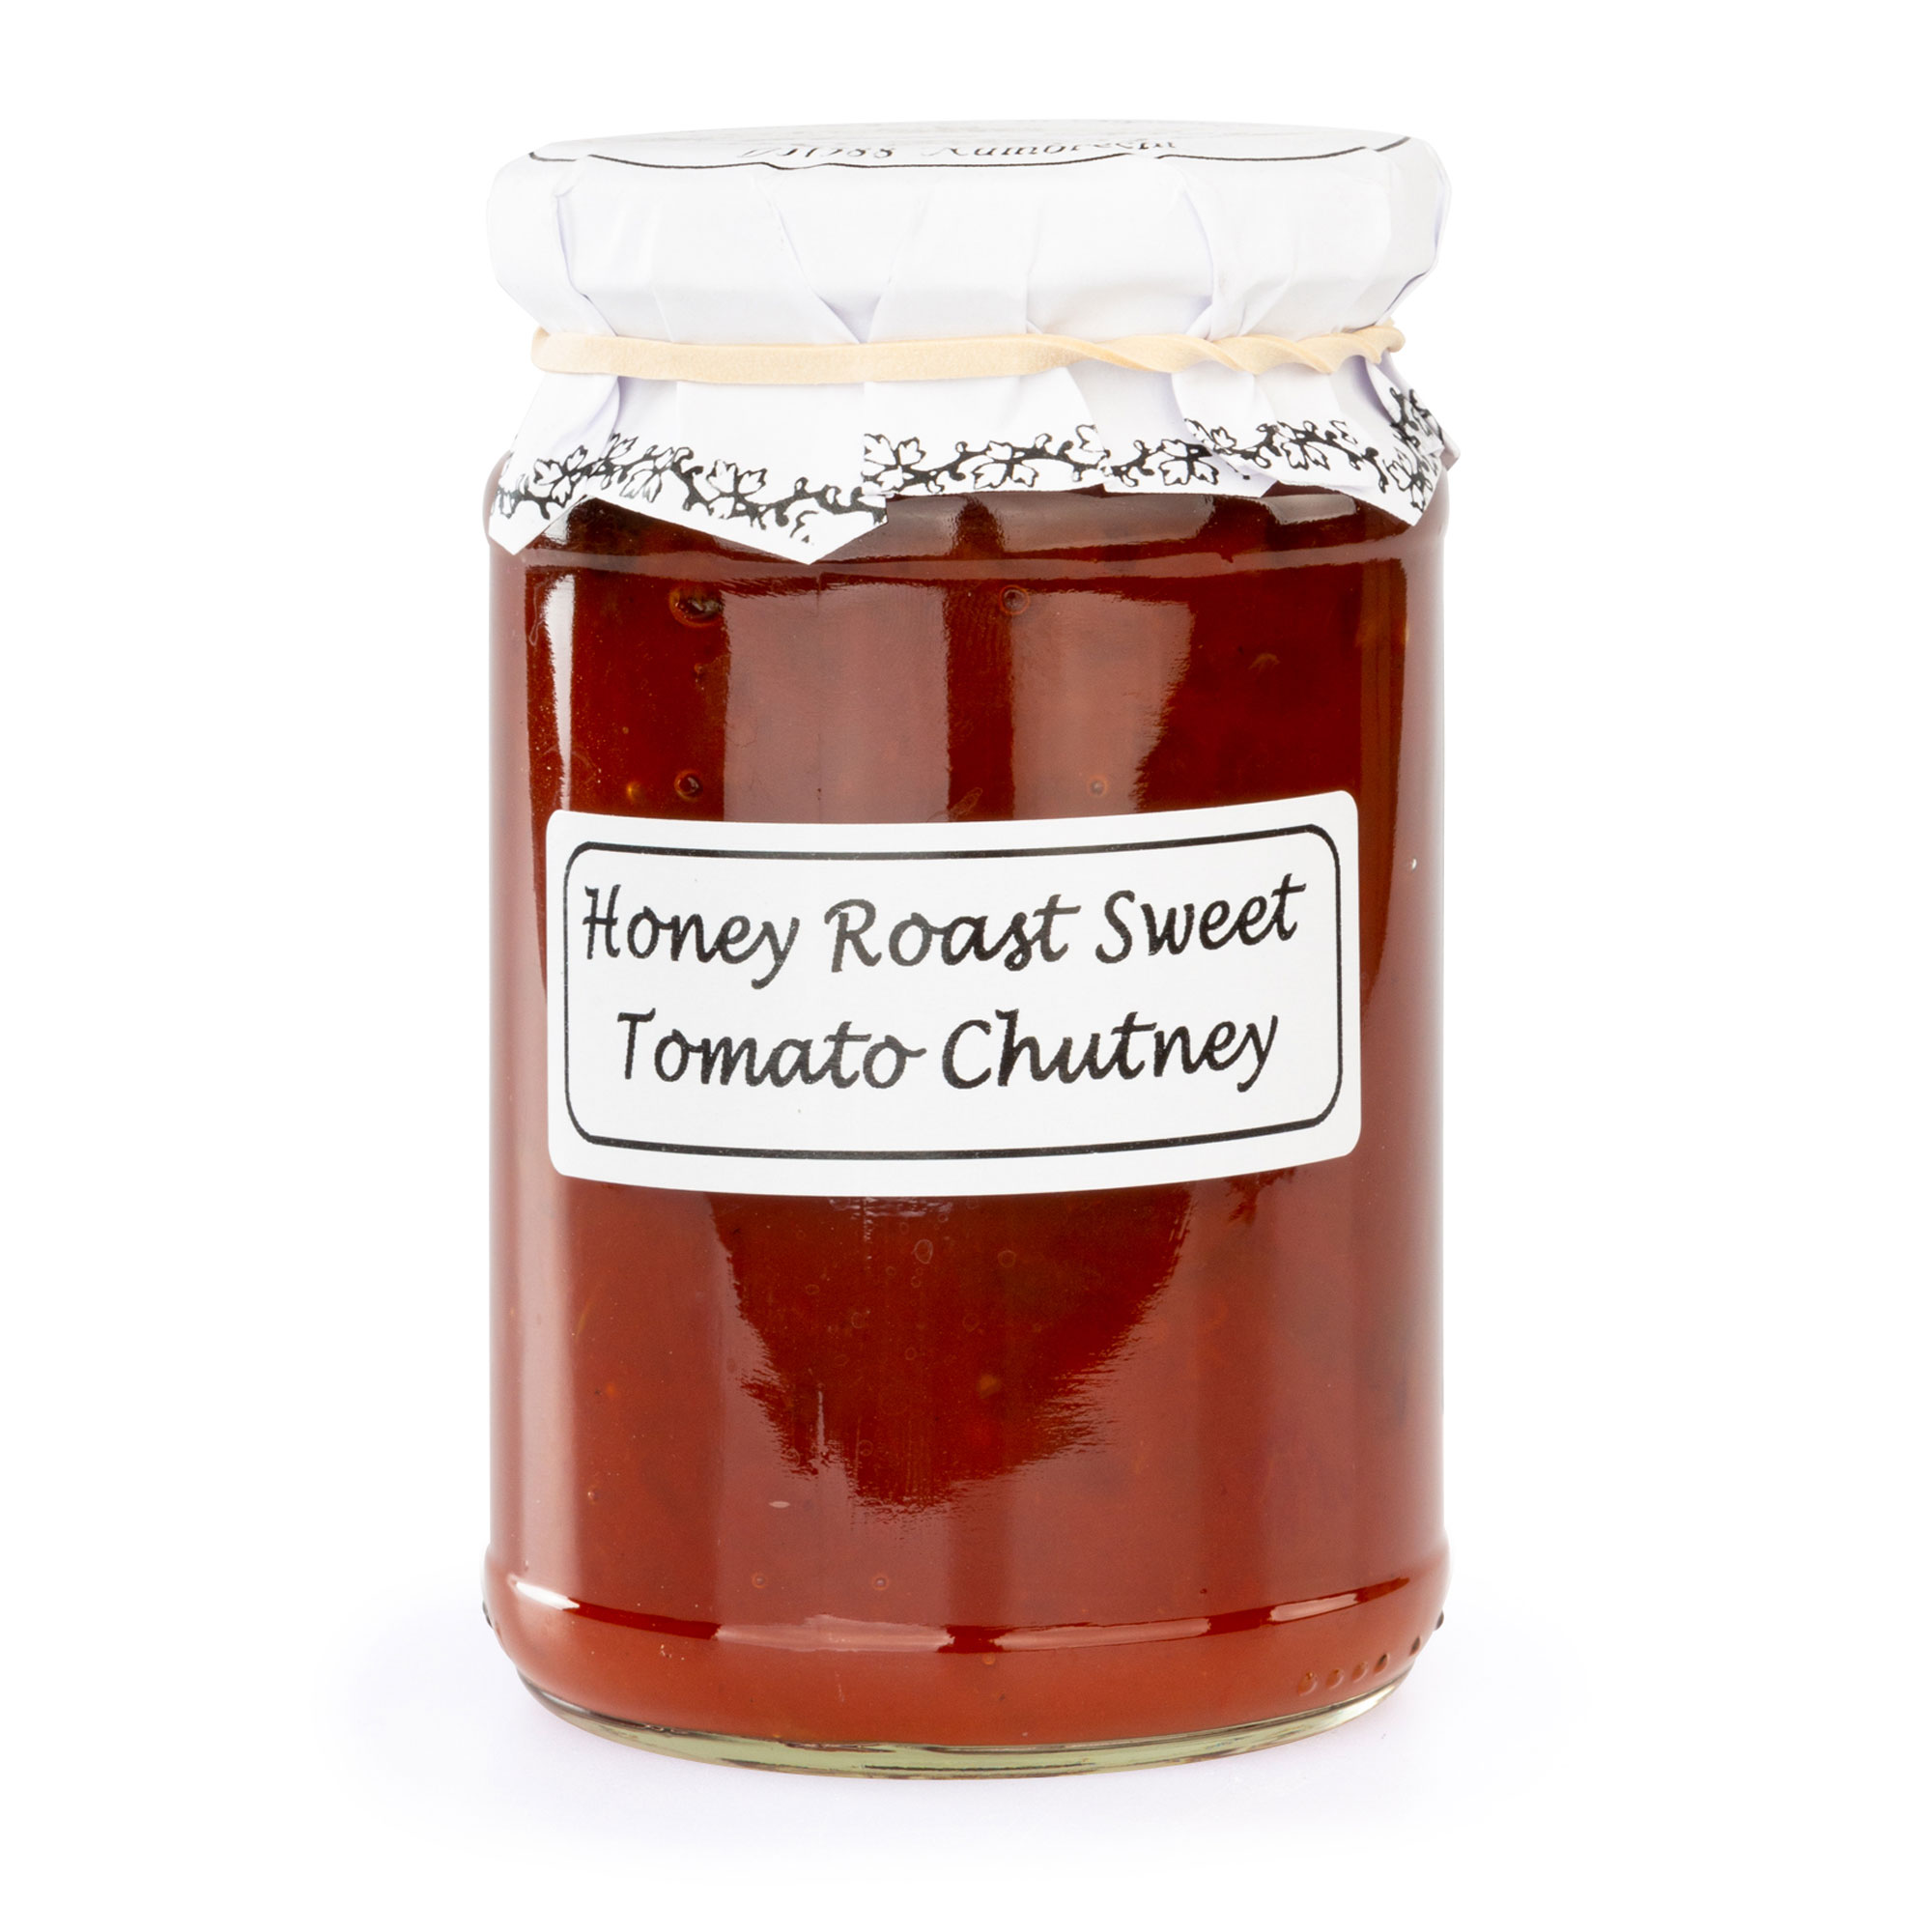 Honey Roast Sweet Tomato Chutney, lieblich-fruchtig